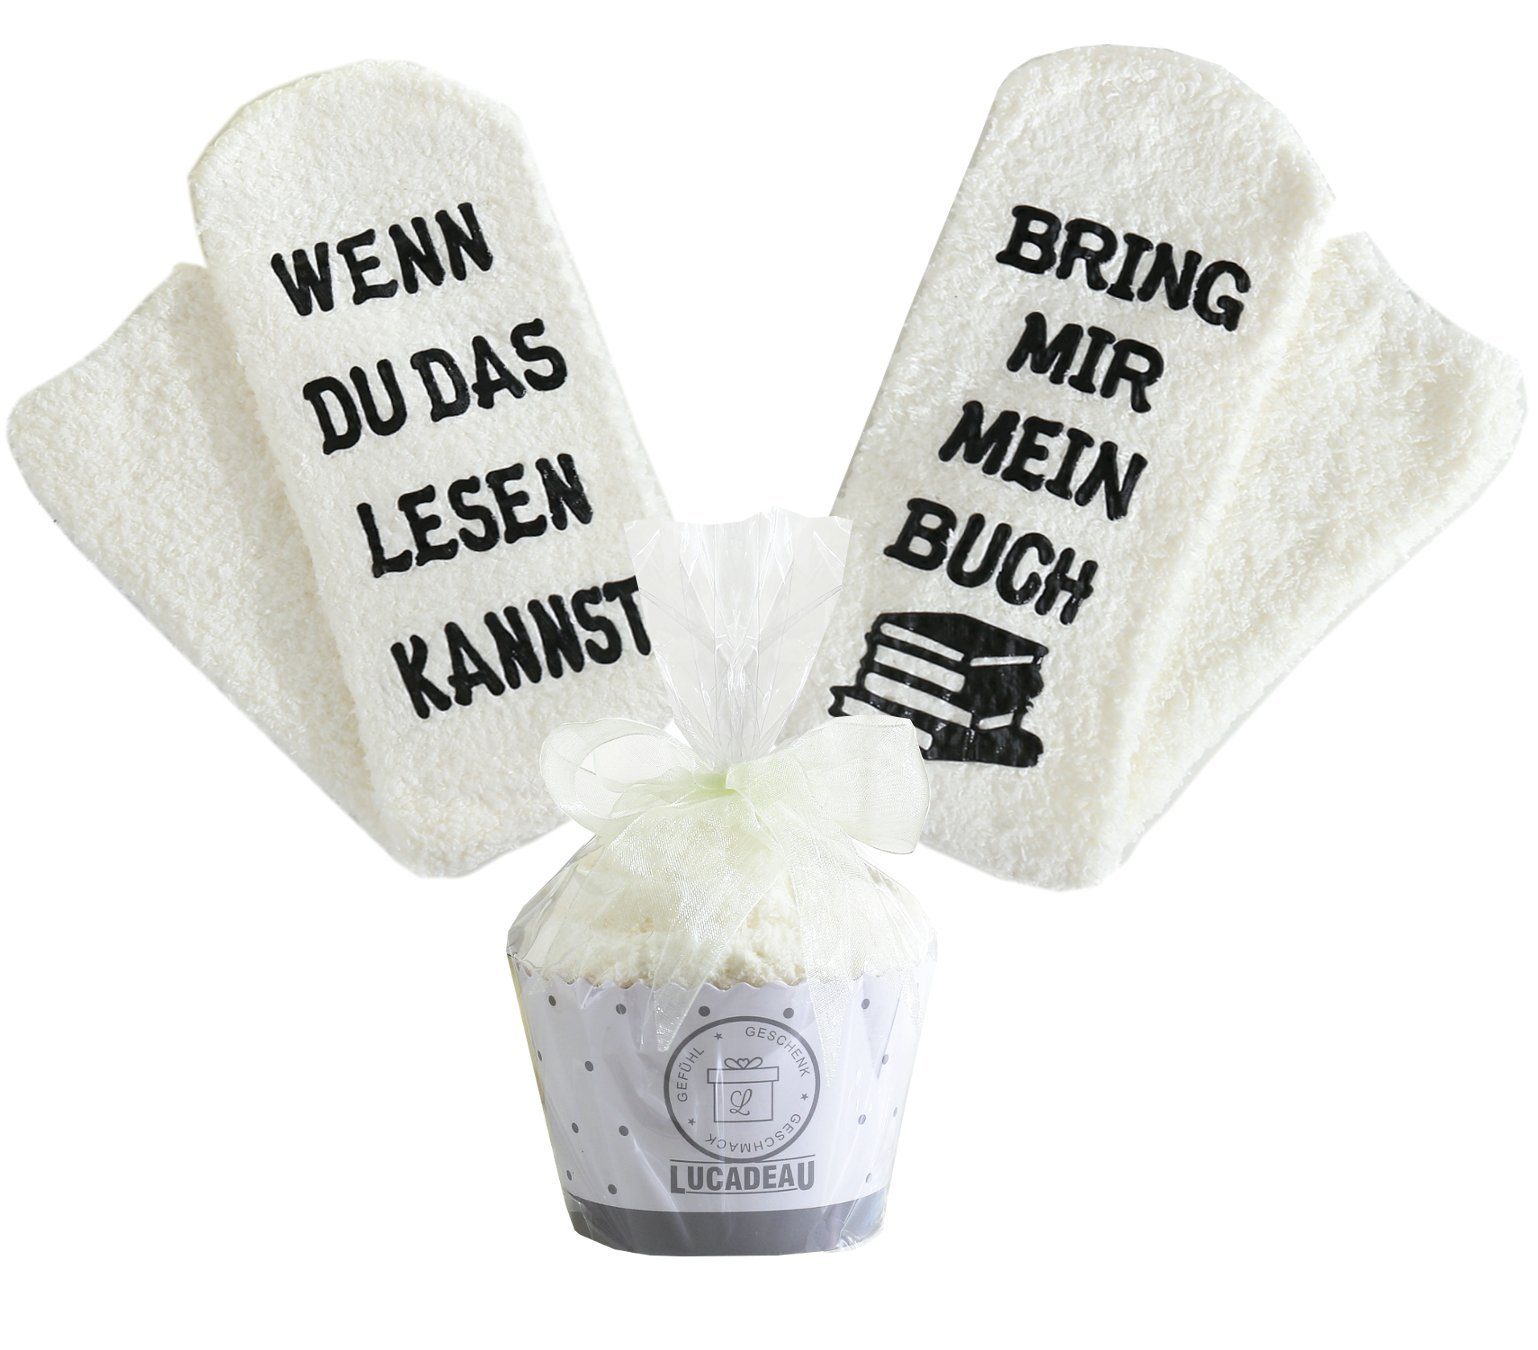 Lucadeau Kuschelsocken Geschenke für Frauen, Wenn du das lesen kannst, bring mir Buch, (Cupcake Verpackung, Gr. 37-43) rutschfest, Socken mit Spruch, Geschenk zum Ostern